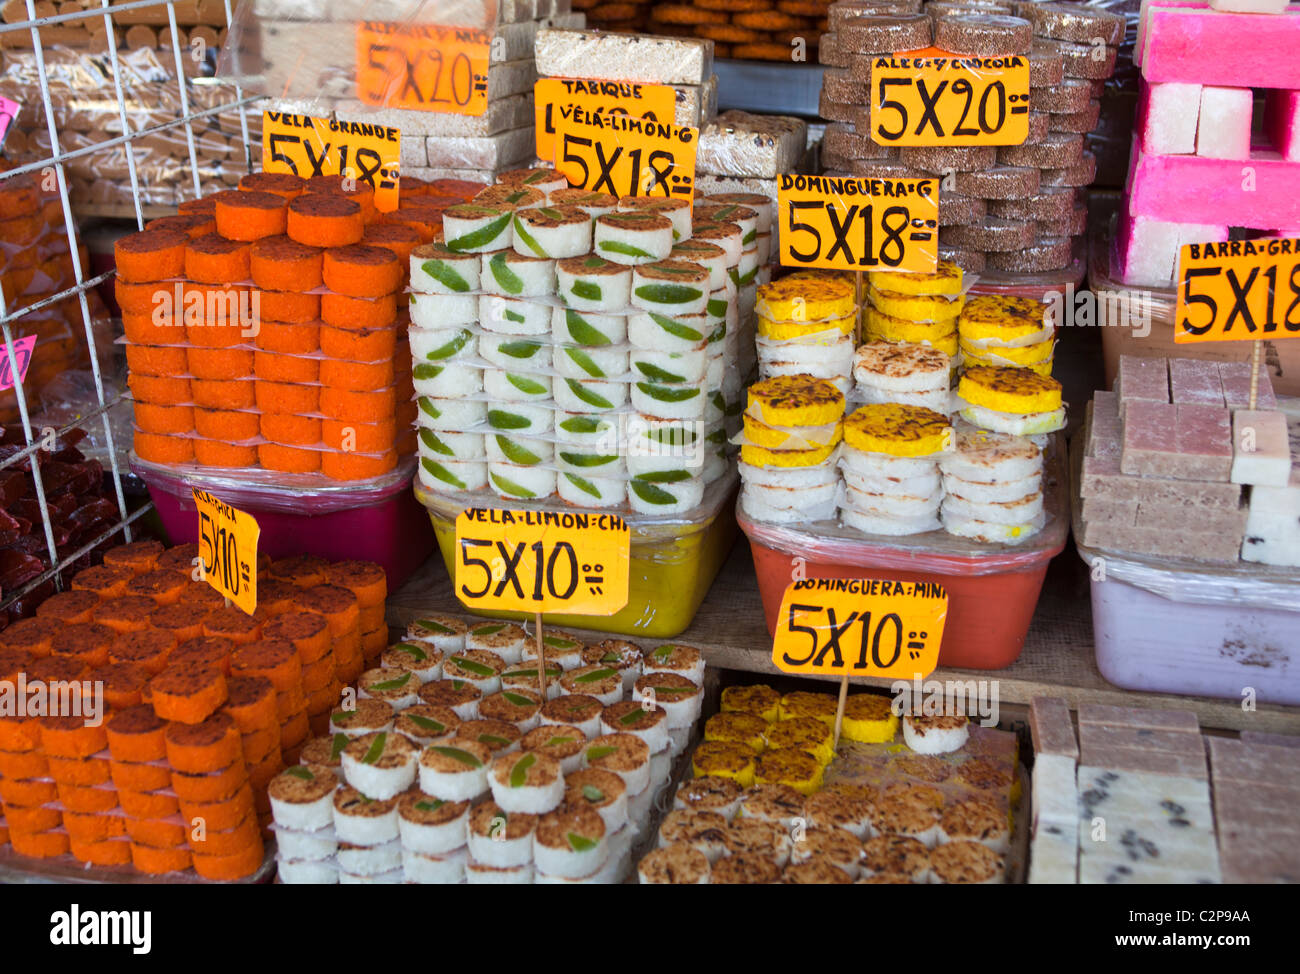 Mercado de Dulces de la Ciudad de Mexico Mexico City Stock Photo